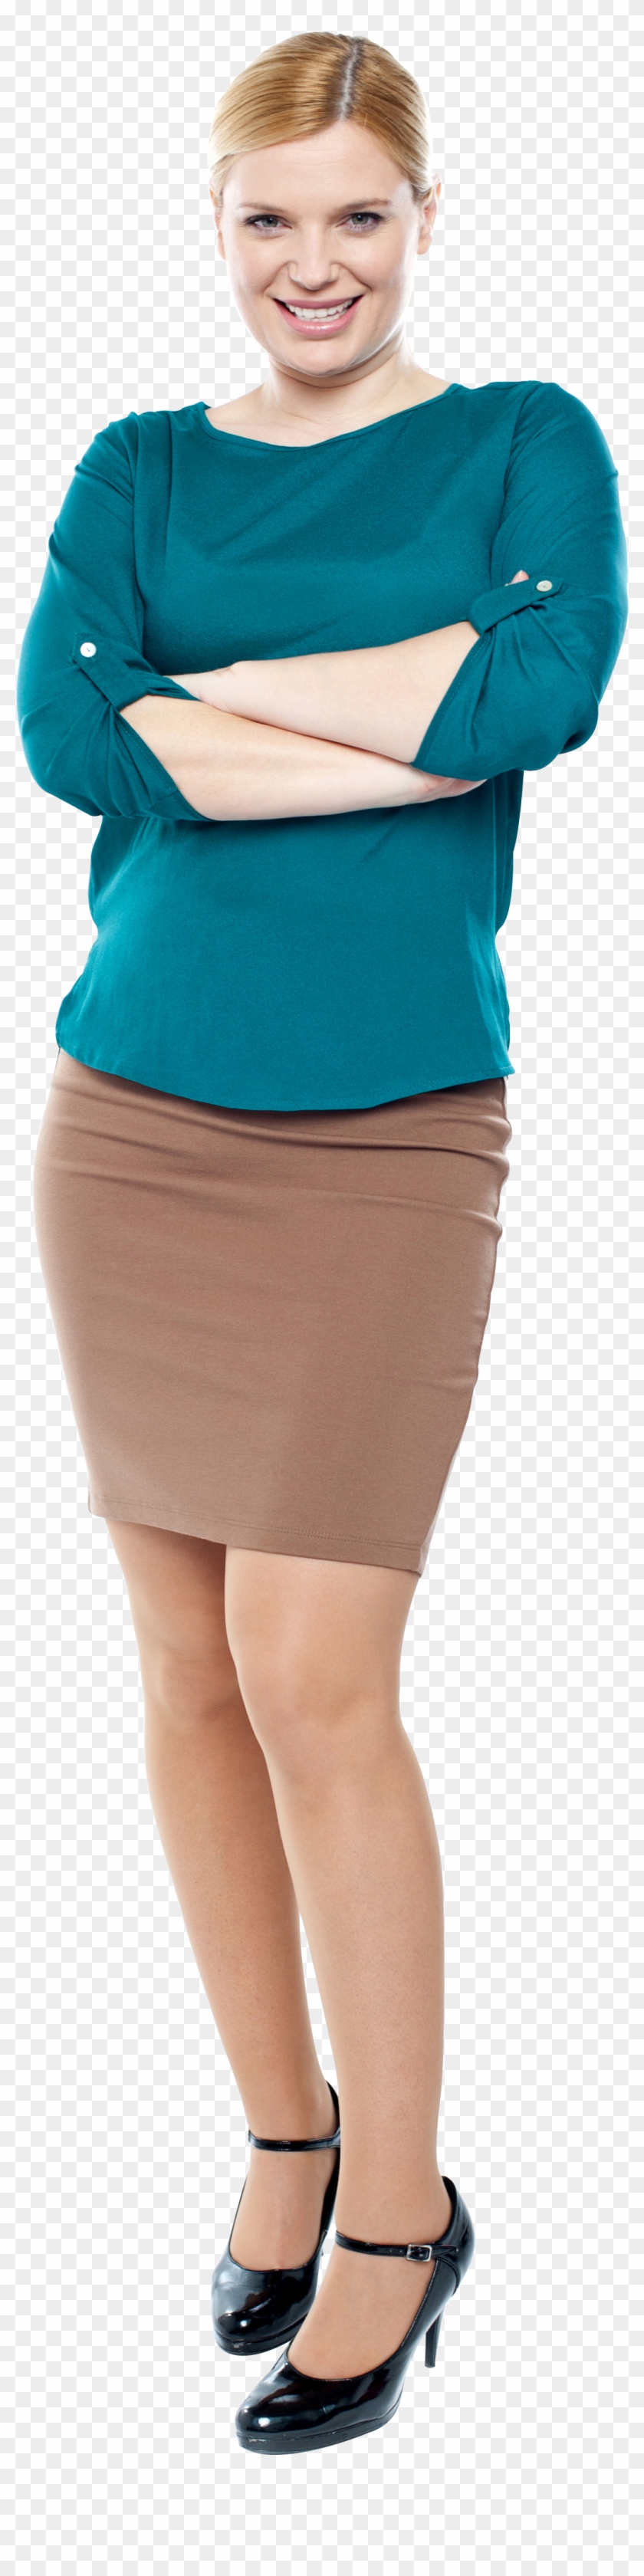 Standing Women - Miniskirt Clipart #182480